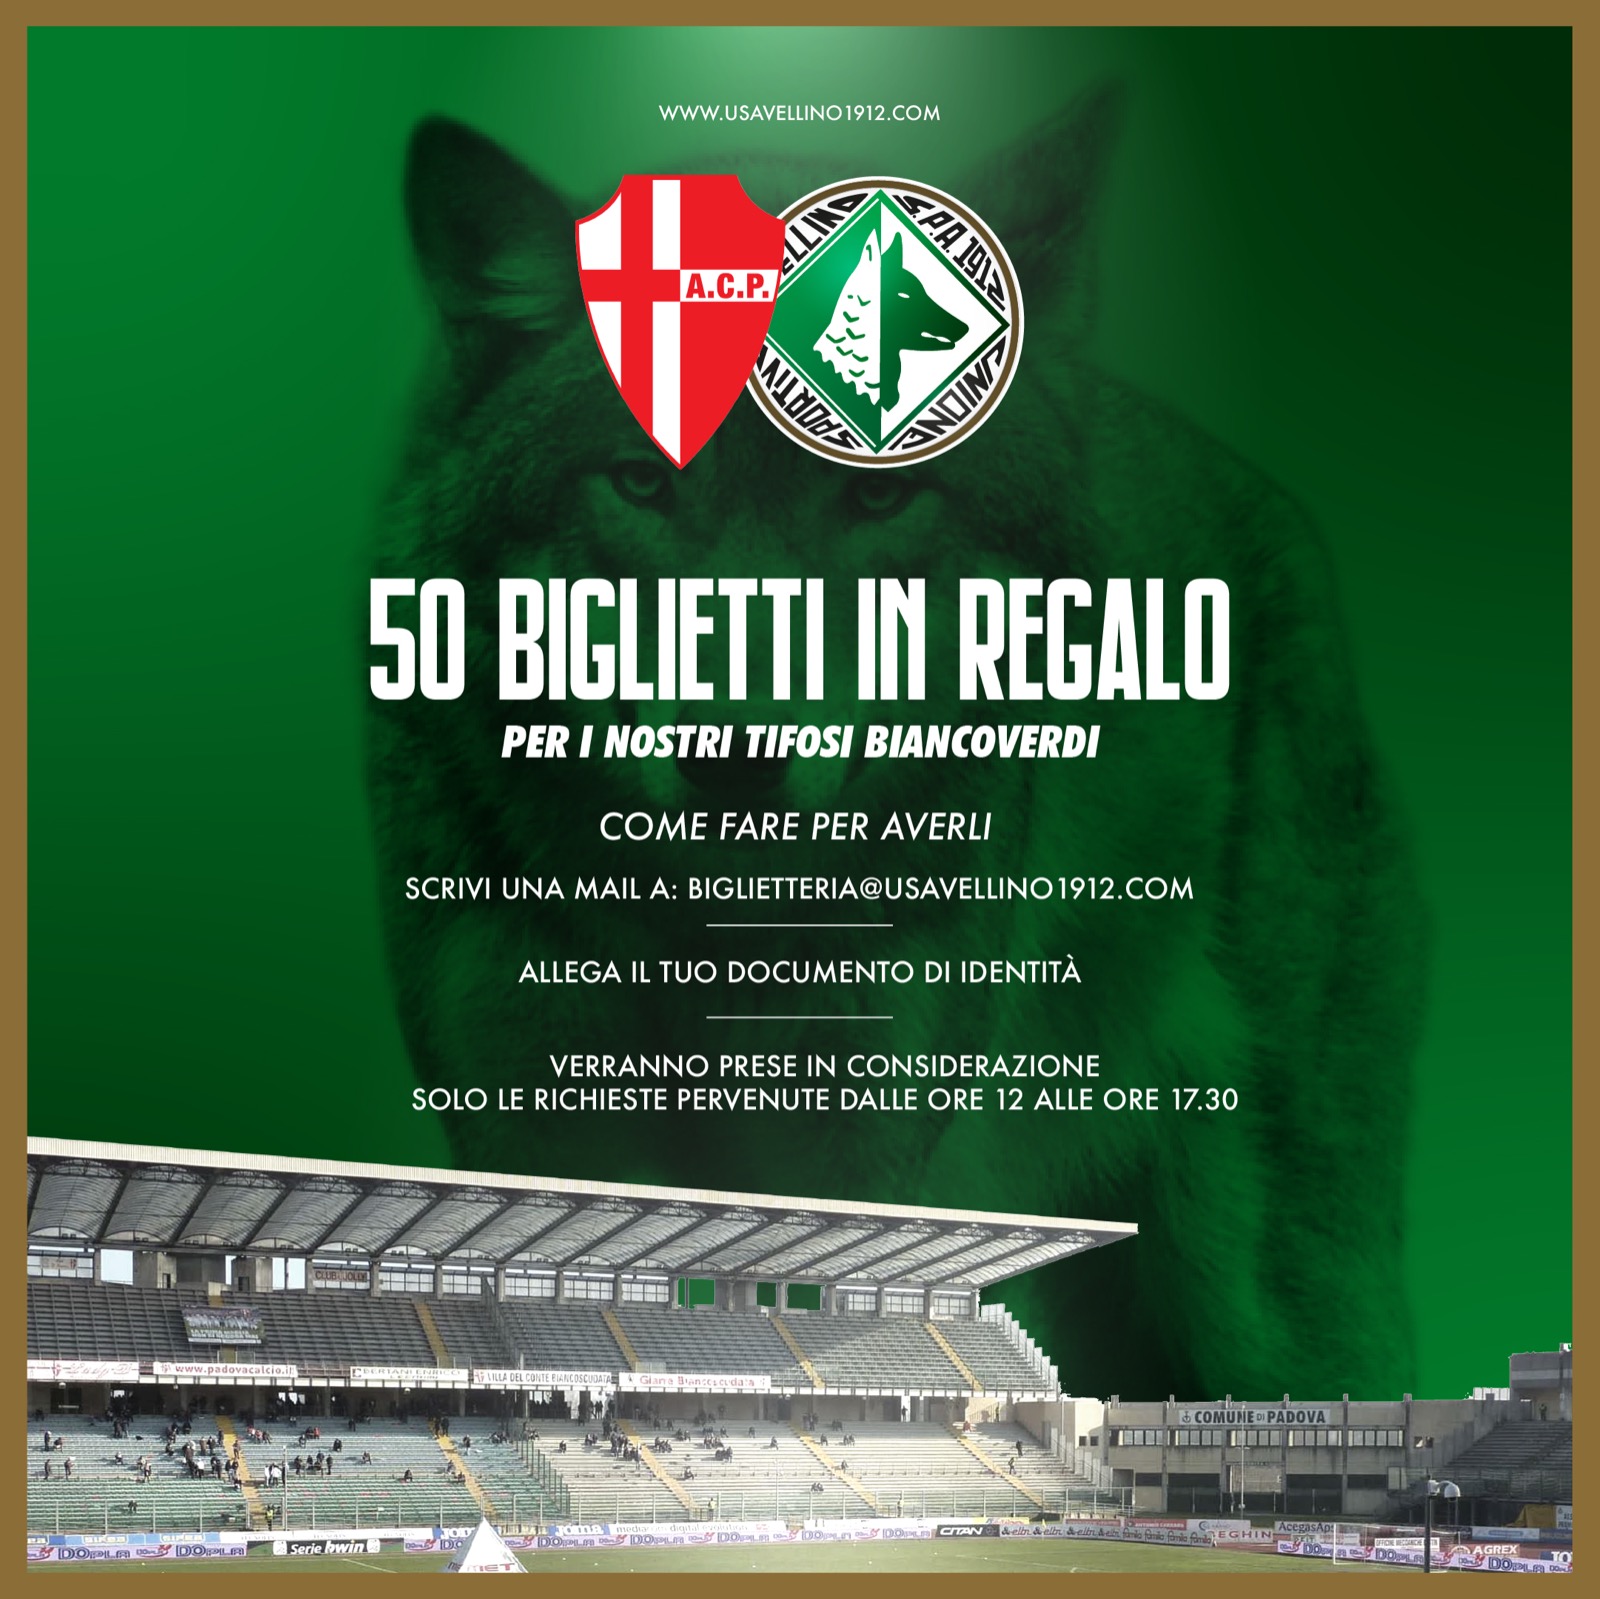 L’ Avellino regala 50 biglietti per il match contro il Padova